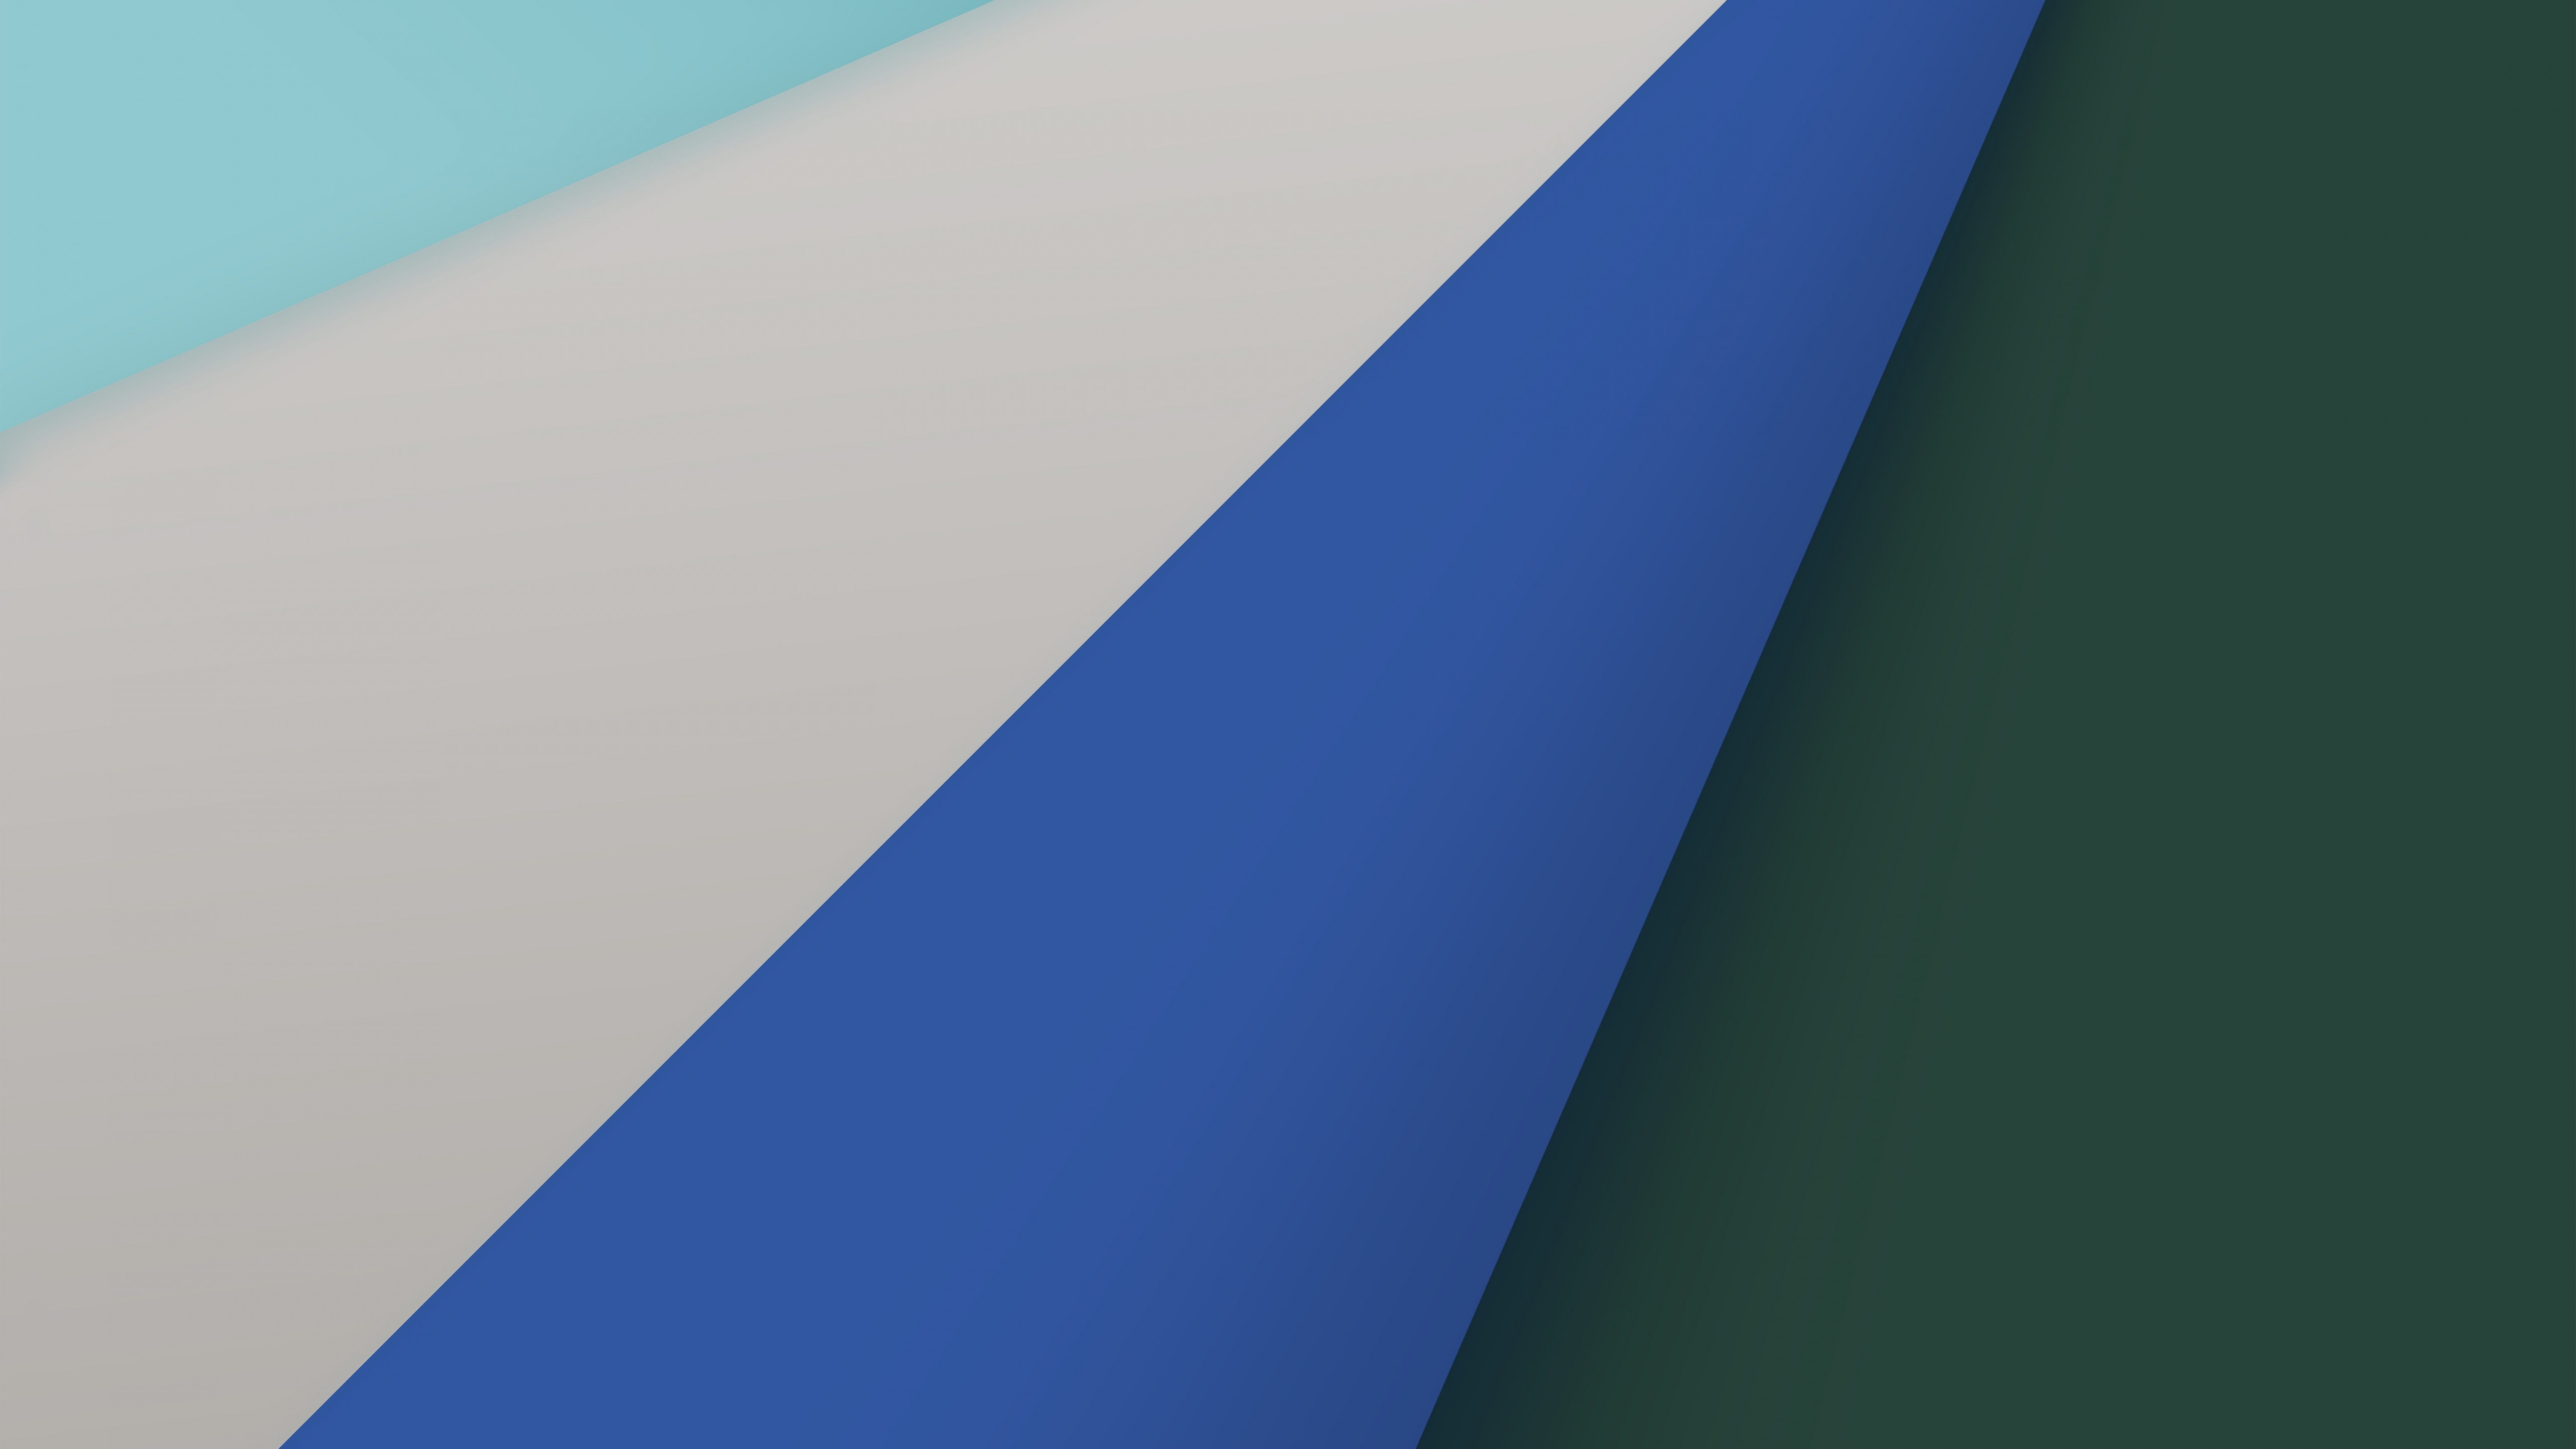 Wallpaper Safari, blue, macOS Big Sur, Apple October 2020 Event, 5K, OS